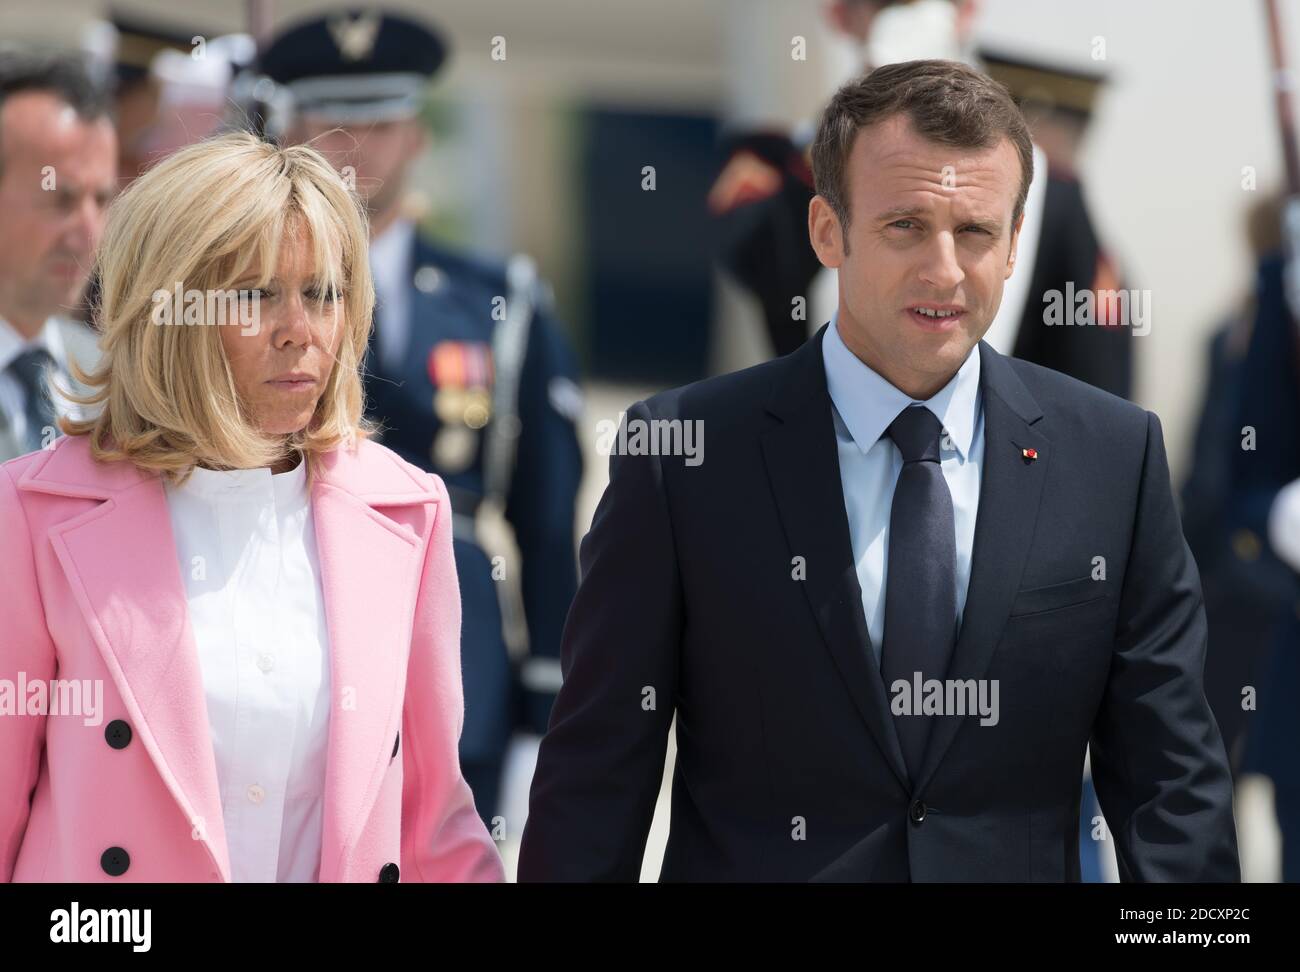 Emmanuel Macron et son épouse Brigitte Macron arrivent à la joint base Andrews Maryland, États-Unis, le 23 avril 2018. Photo de Jacques Witt/Pool/ABACAPRESS.COM Banque D'Images